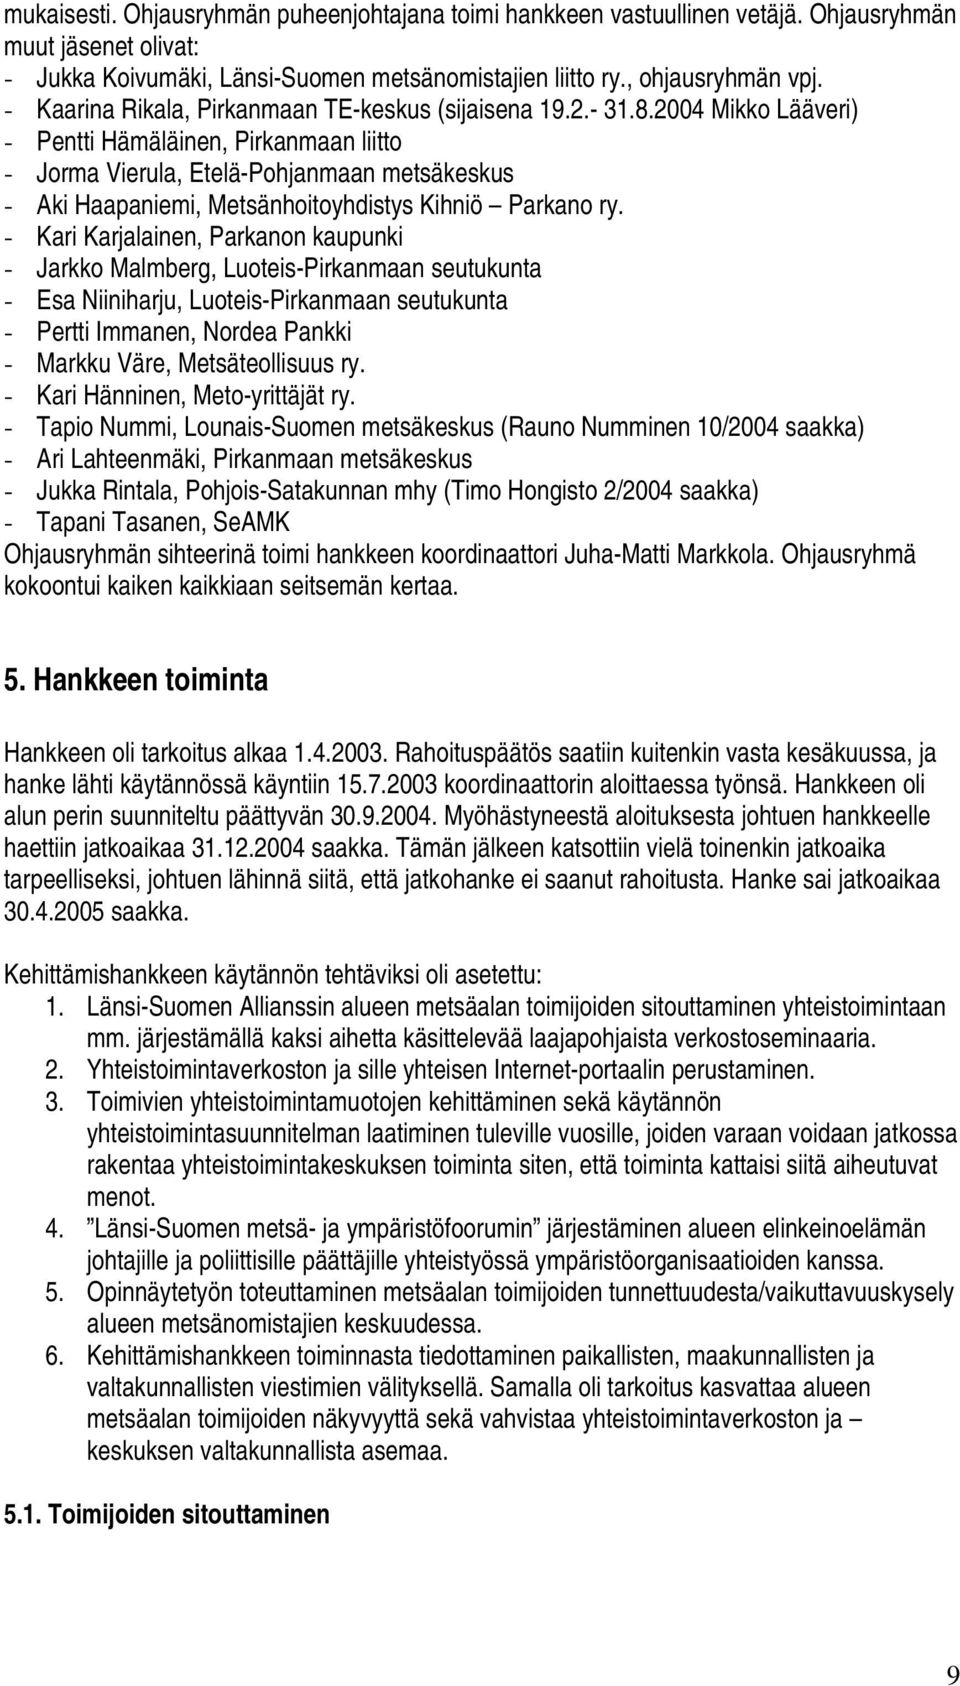 2004 Mikko Lääveri) - Pentti Hämäläinen, Pirkanmaan liitto - Jorma Vierula, Etelä-Pohjanmaan metsäkeskus - Aki Haapaniemi, Metsänhoitoyhdistys Kihniö Parkano ry.